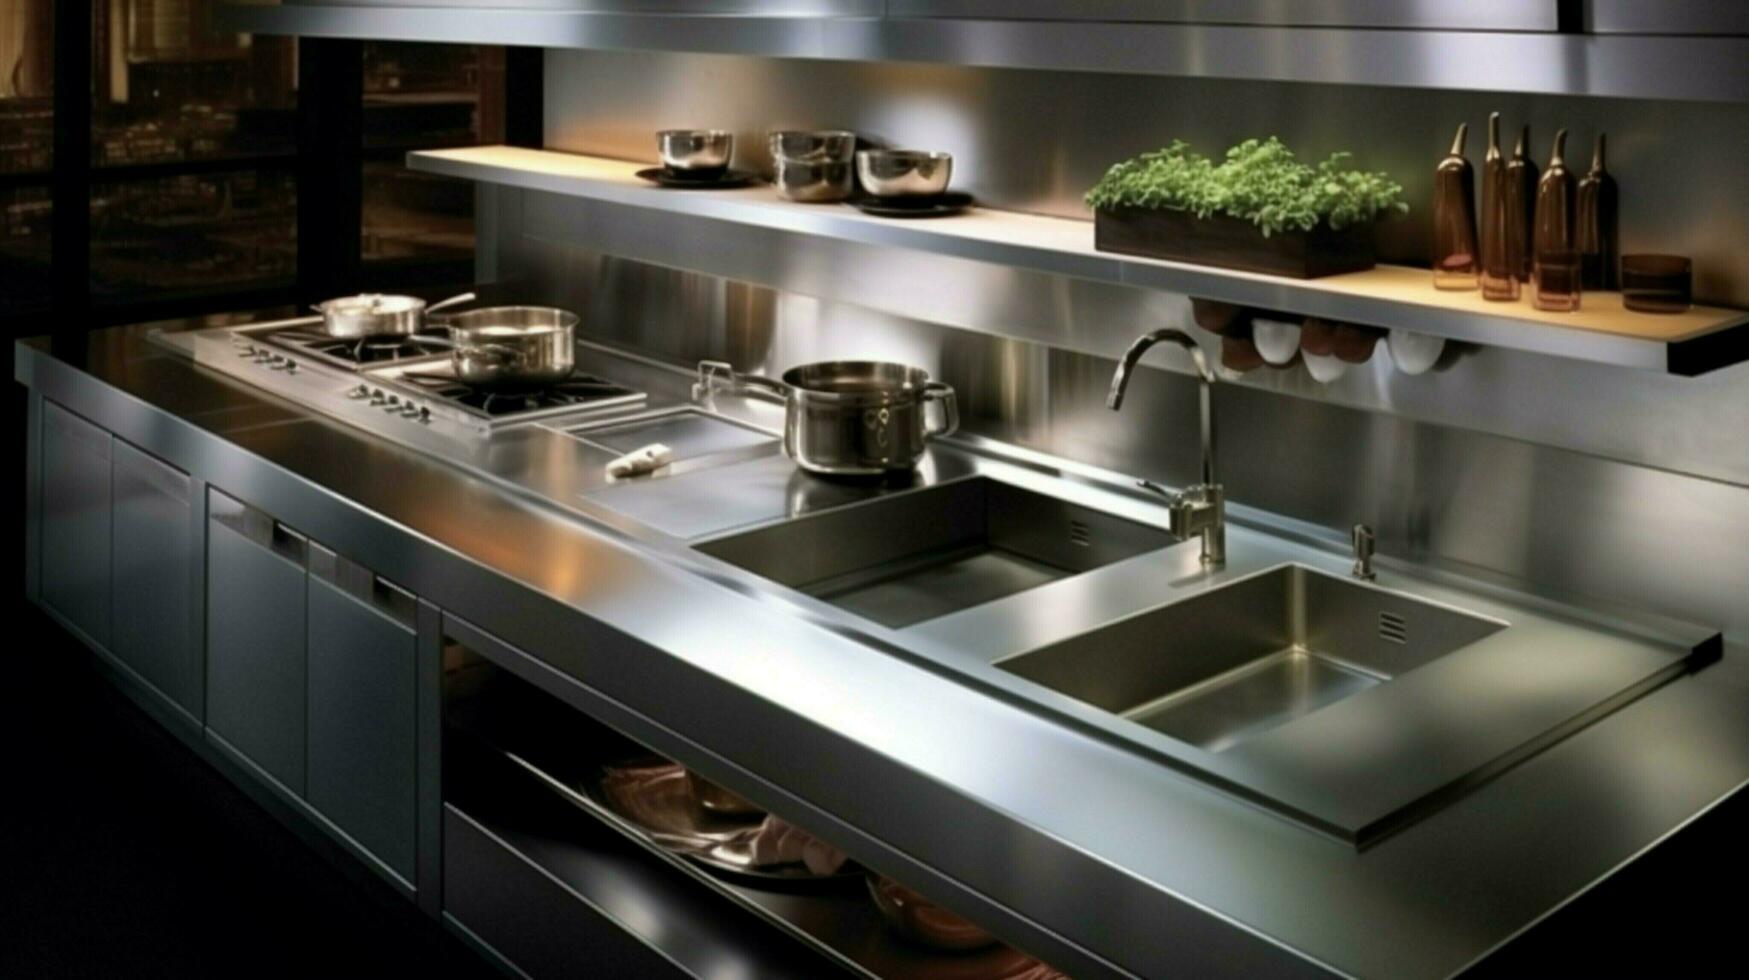 modern kitchen equipment in stainless steel design photo